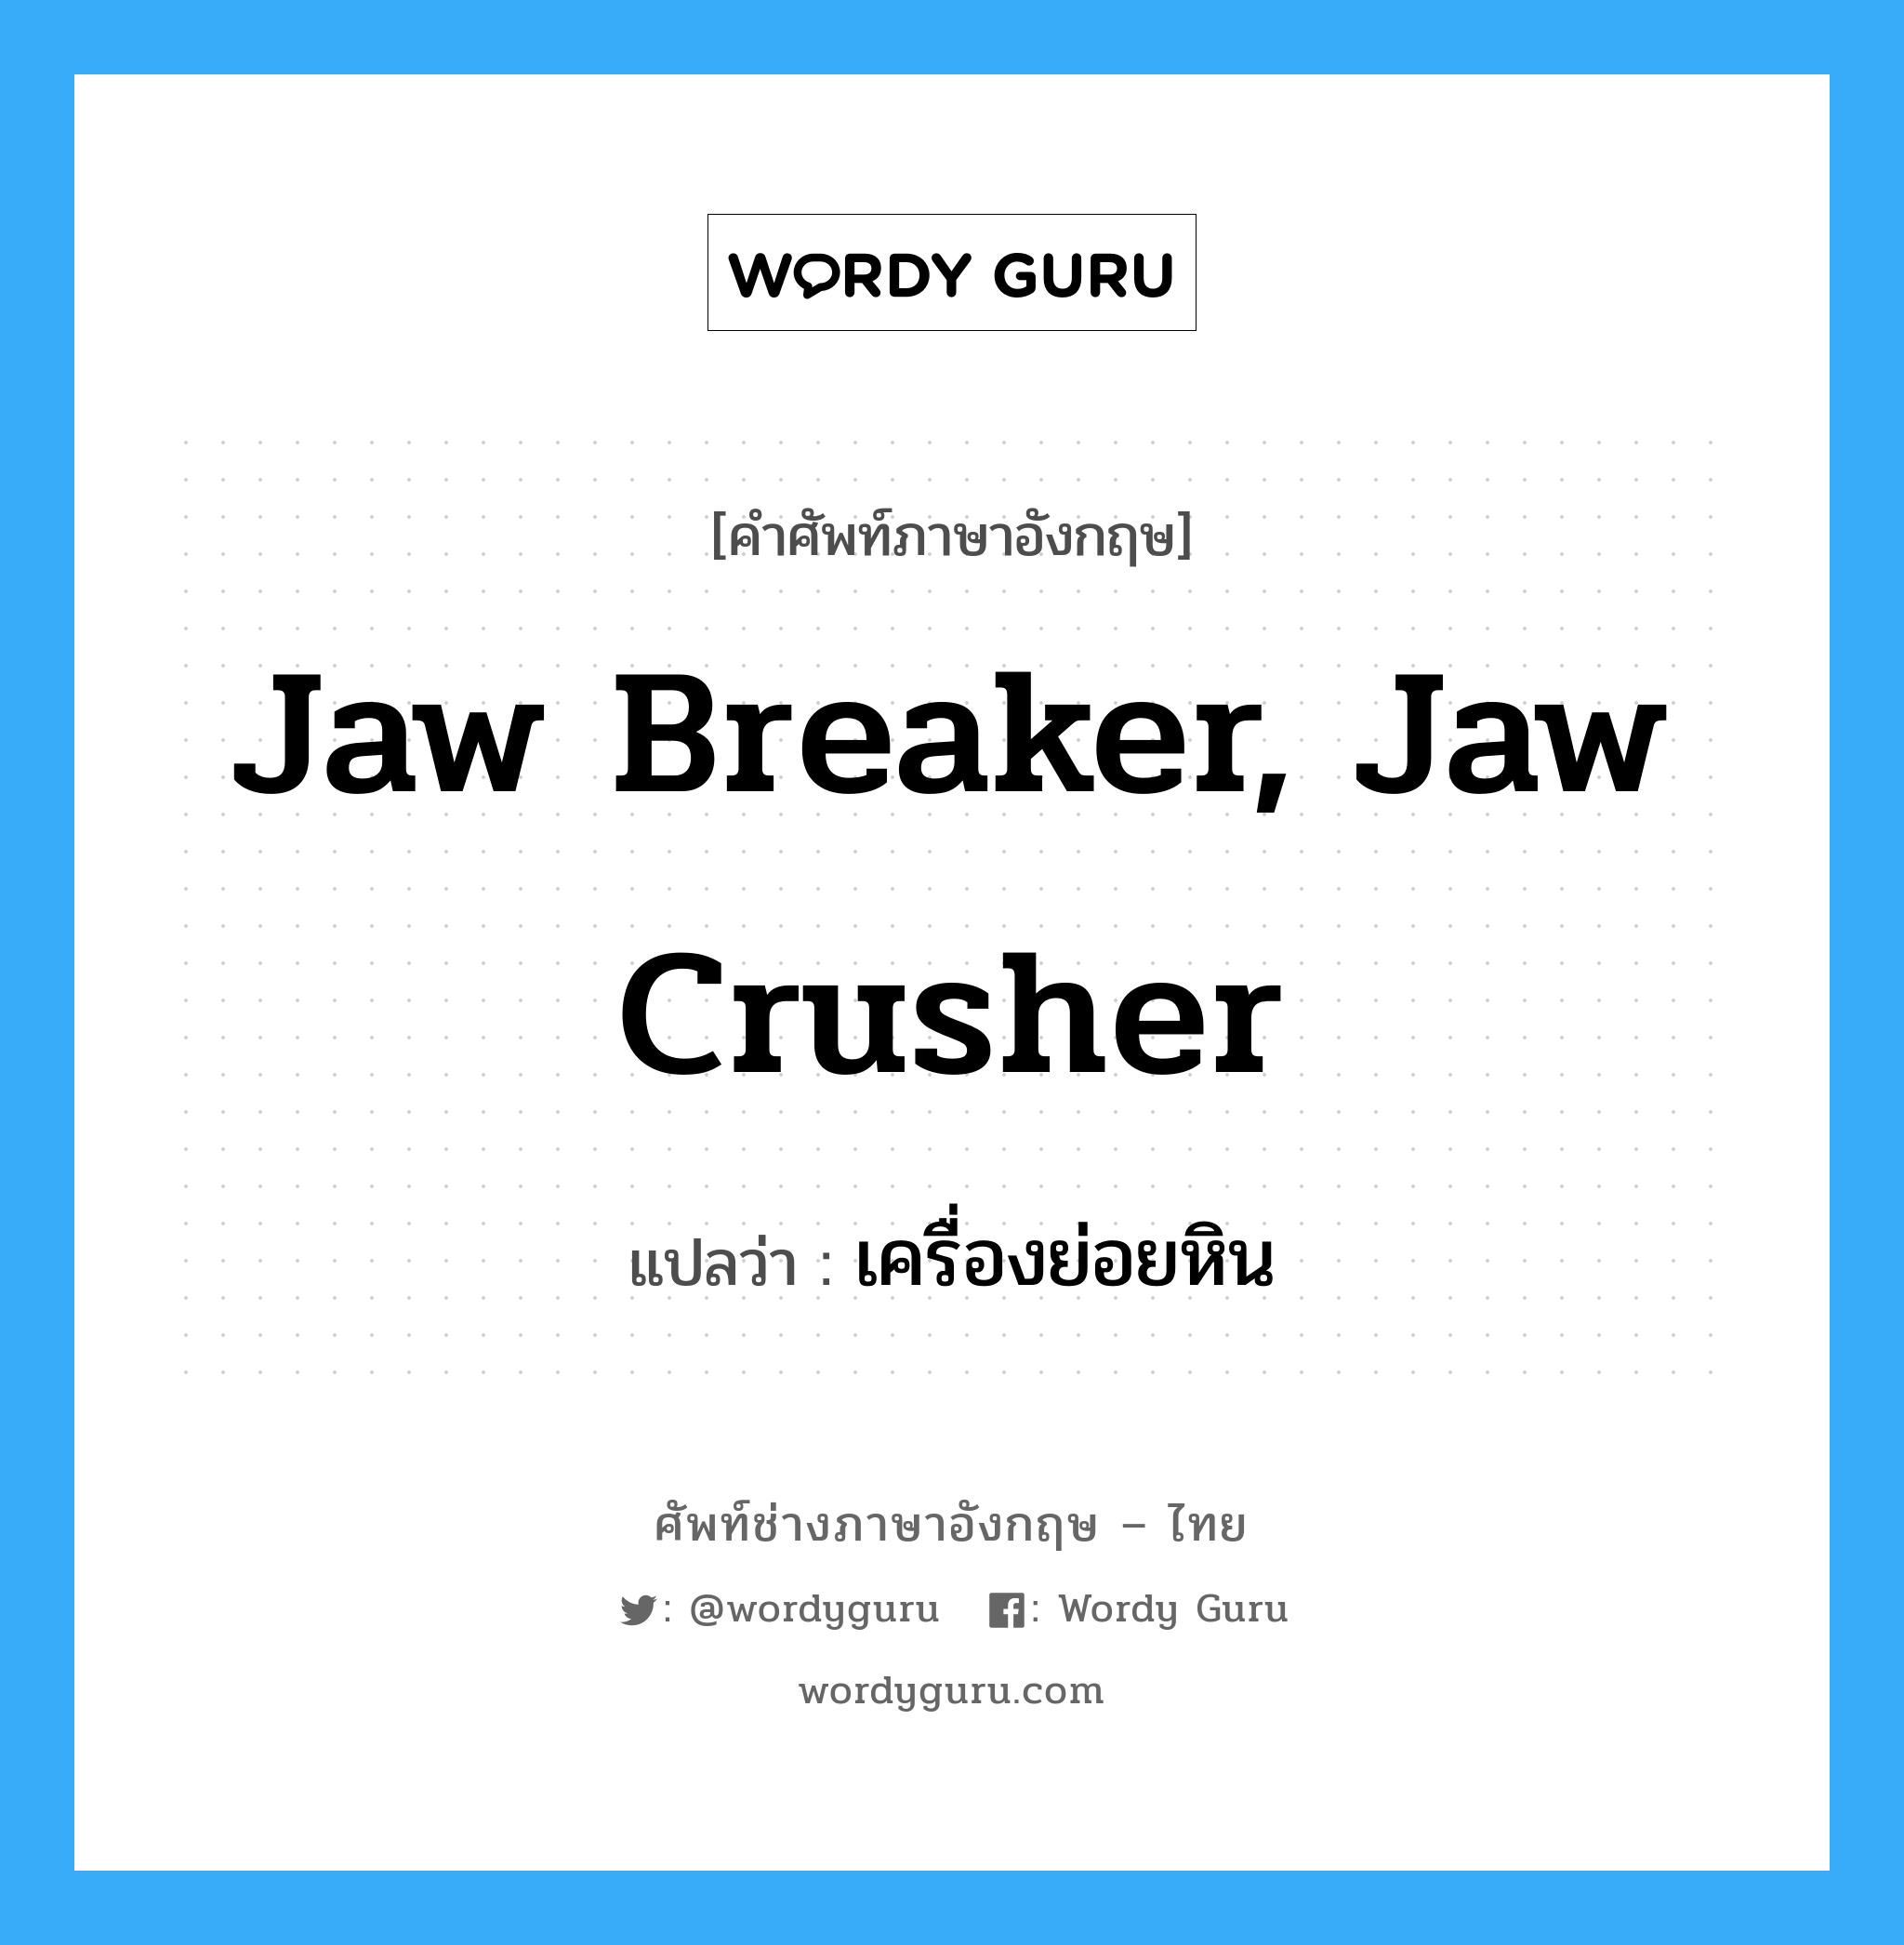 เครื่องย่อยหิน ภาษาอังกฤษ?, คำศัพท์ช่างภาษาอังกฤษ - ไทย เครื่องย่อยหิน คำศัพท์ภาษาอังกฤษ เครื่องย่อยหิน แปลว่า jaw breaker, jaw crusher